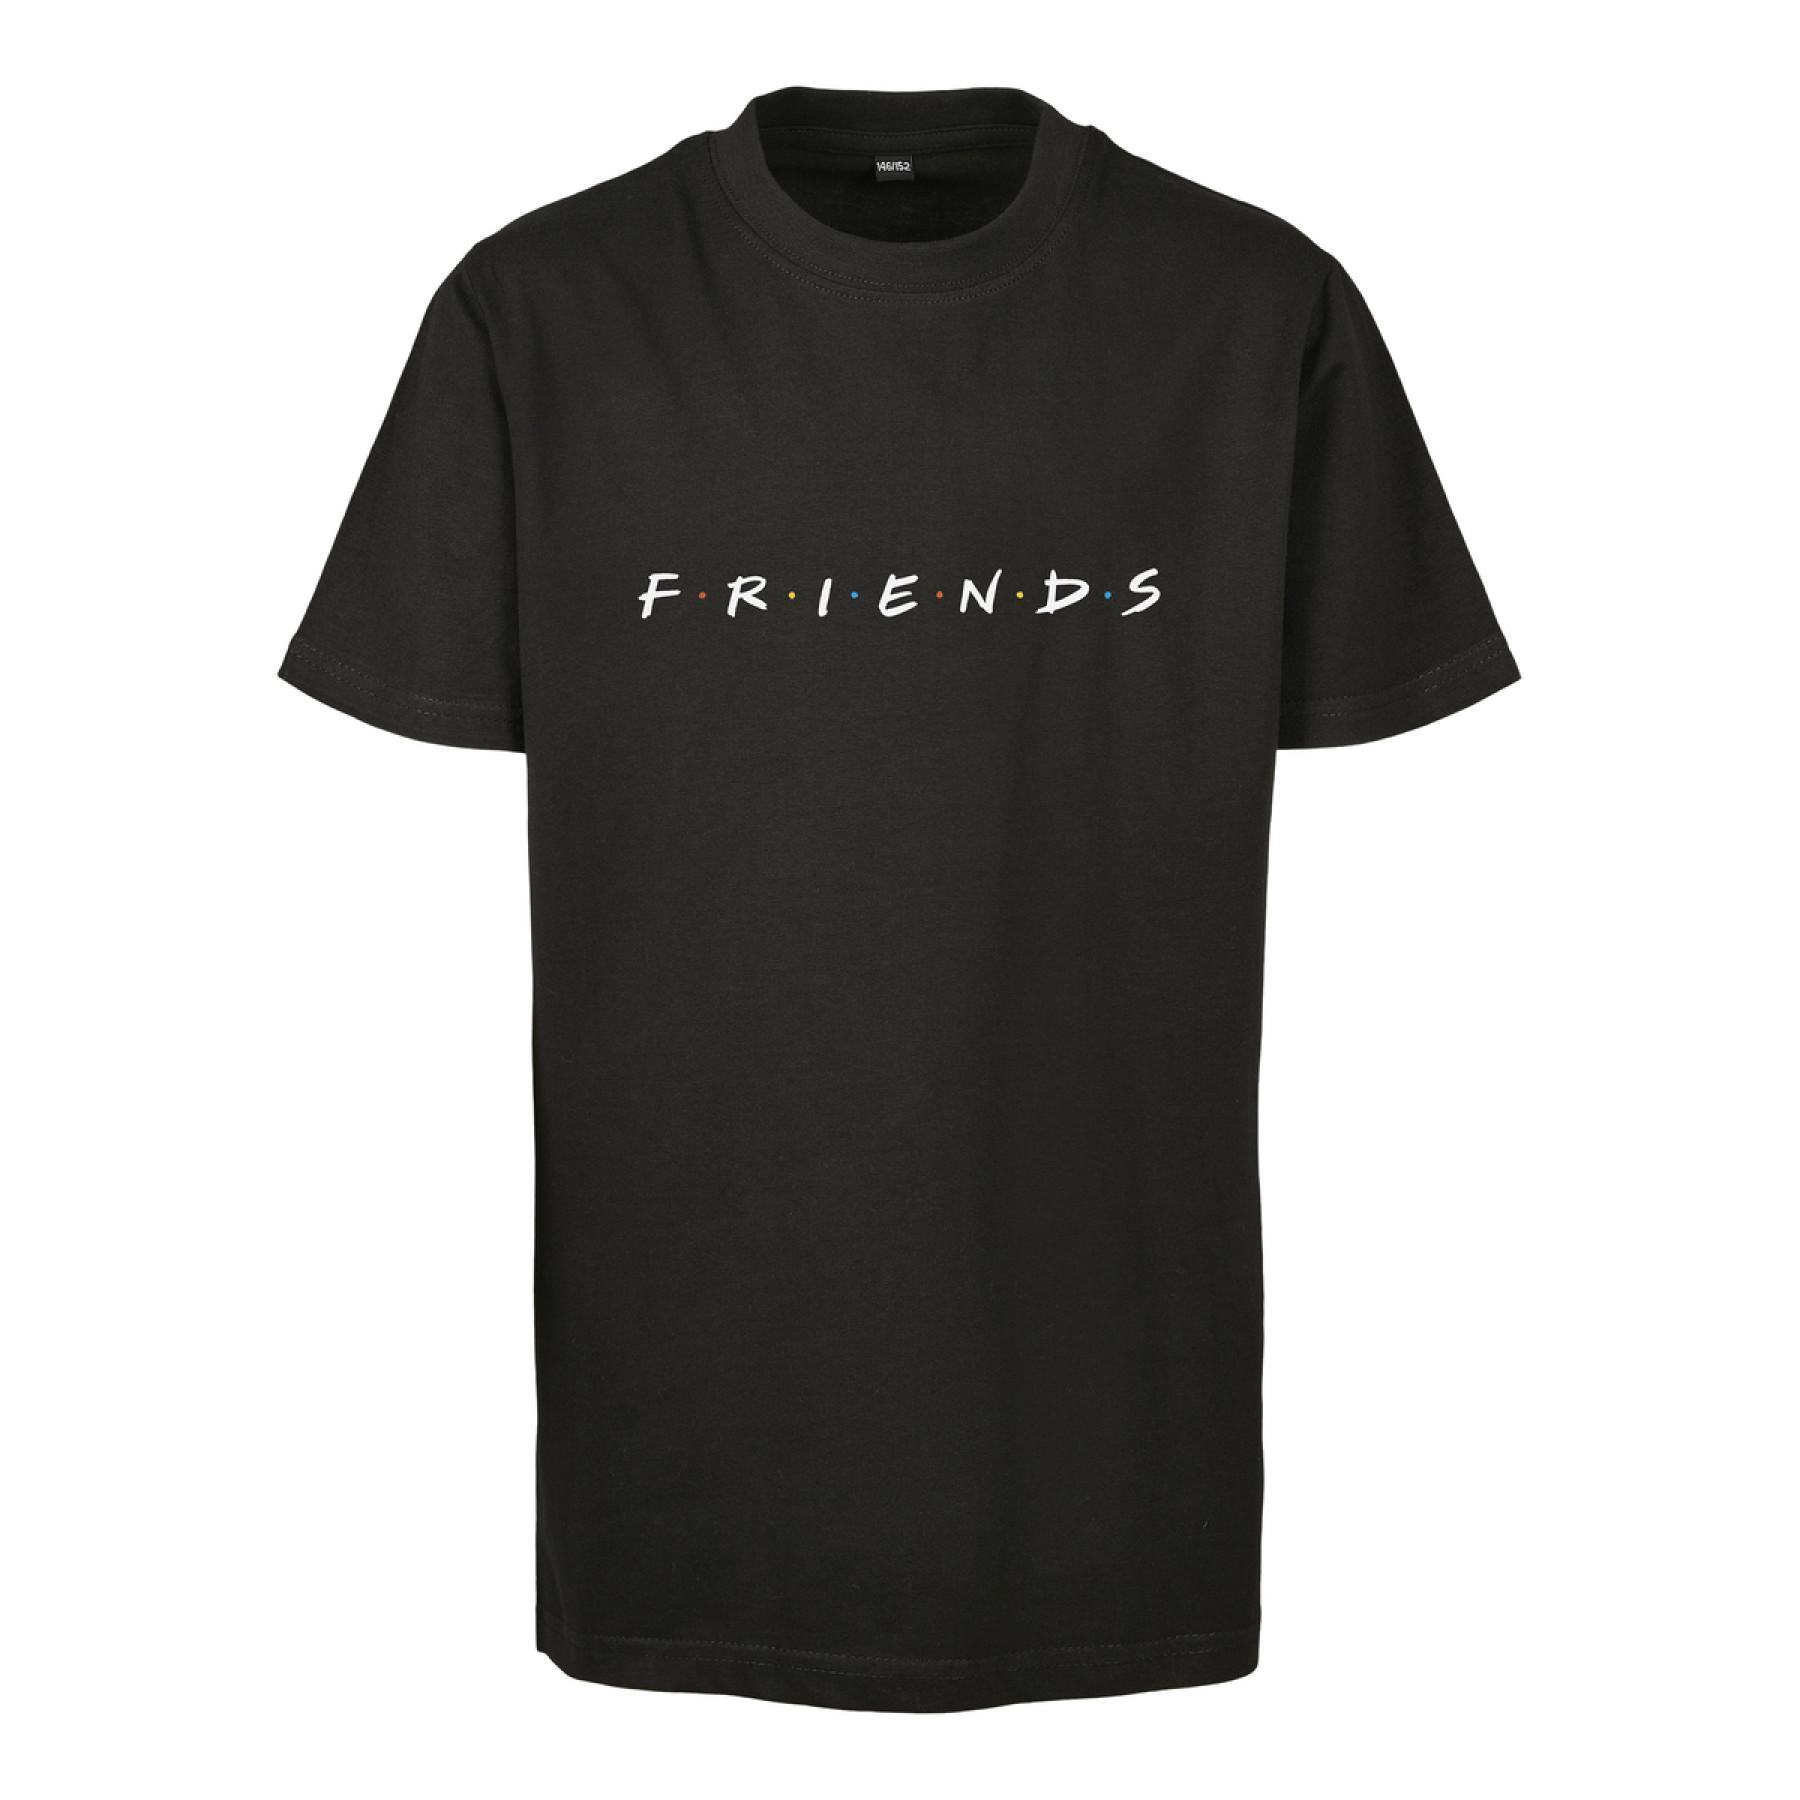 Kinder-T-shirt Mister Tee friends logo